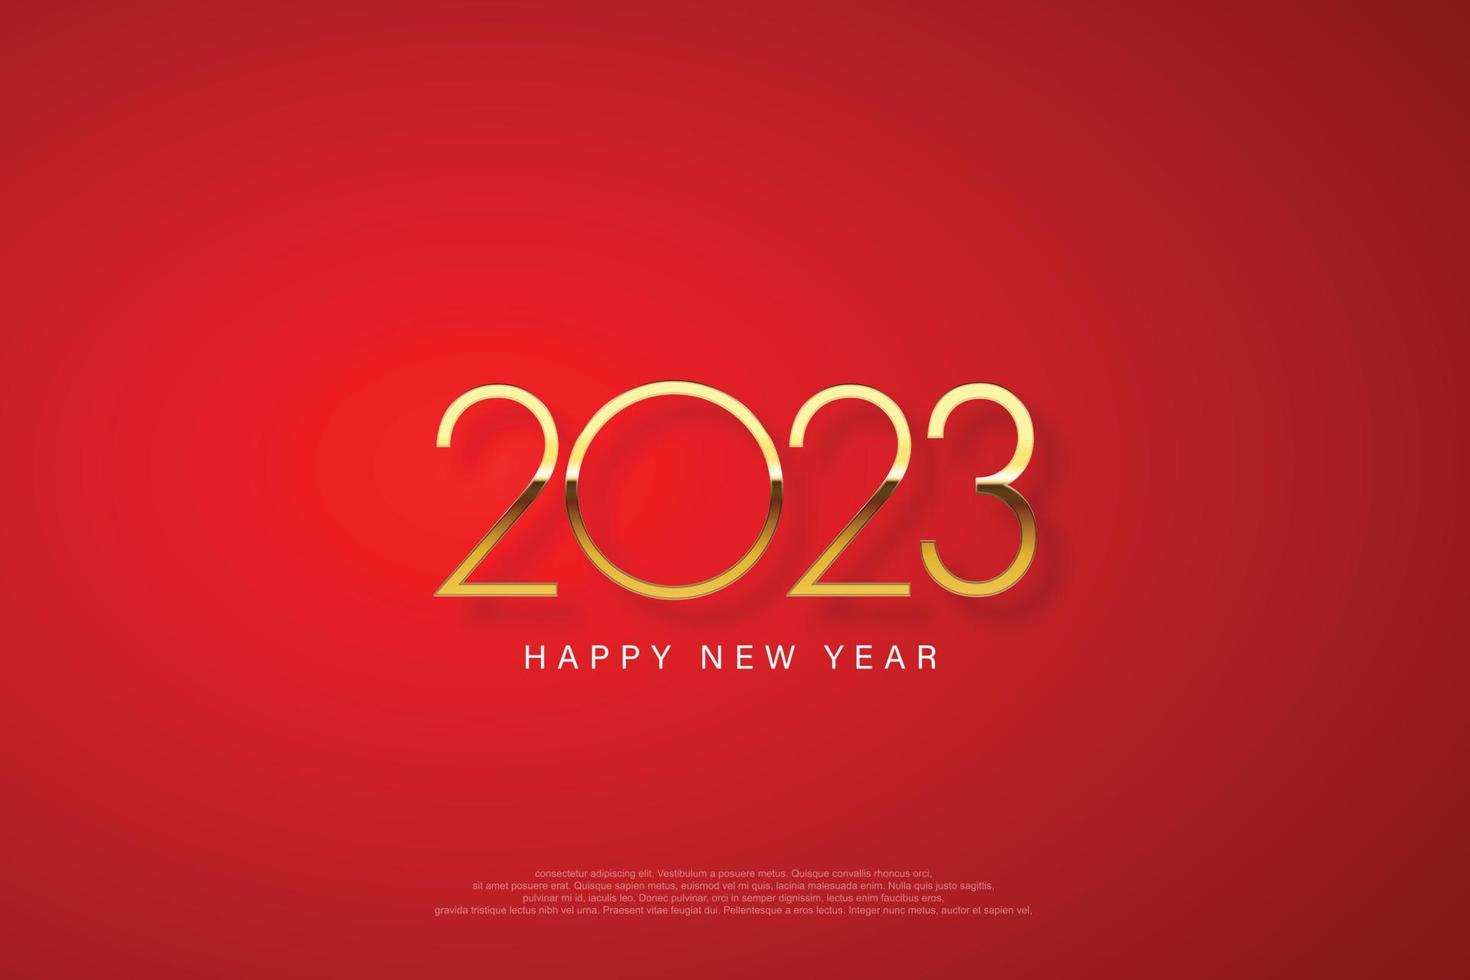 2023 gott nytt år elegant design - vektorillustration av gyllene 2023 logotypnummer på röd bakgrund - perfekt typografi för 2023 spara datum lyxdesign och nyårsfirande. vektor